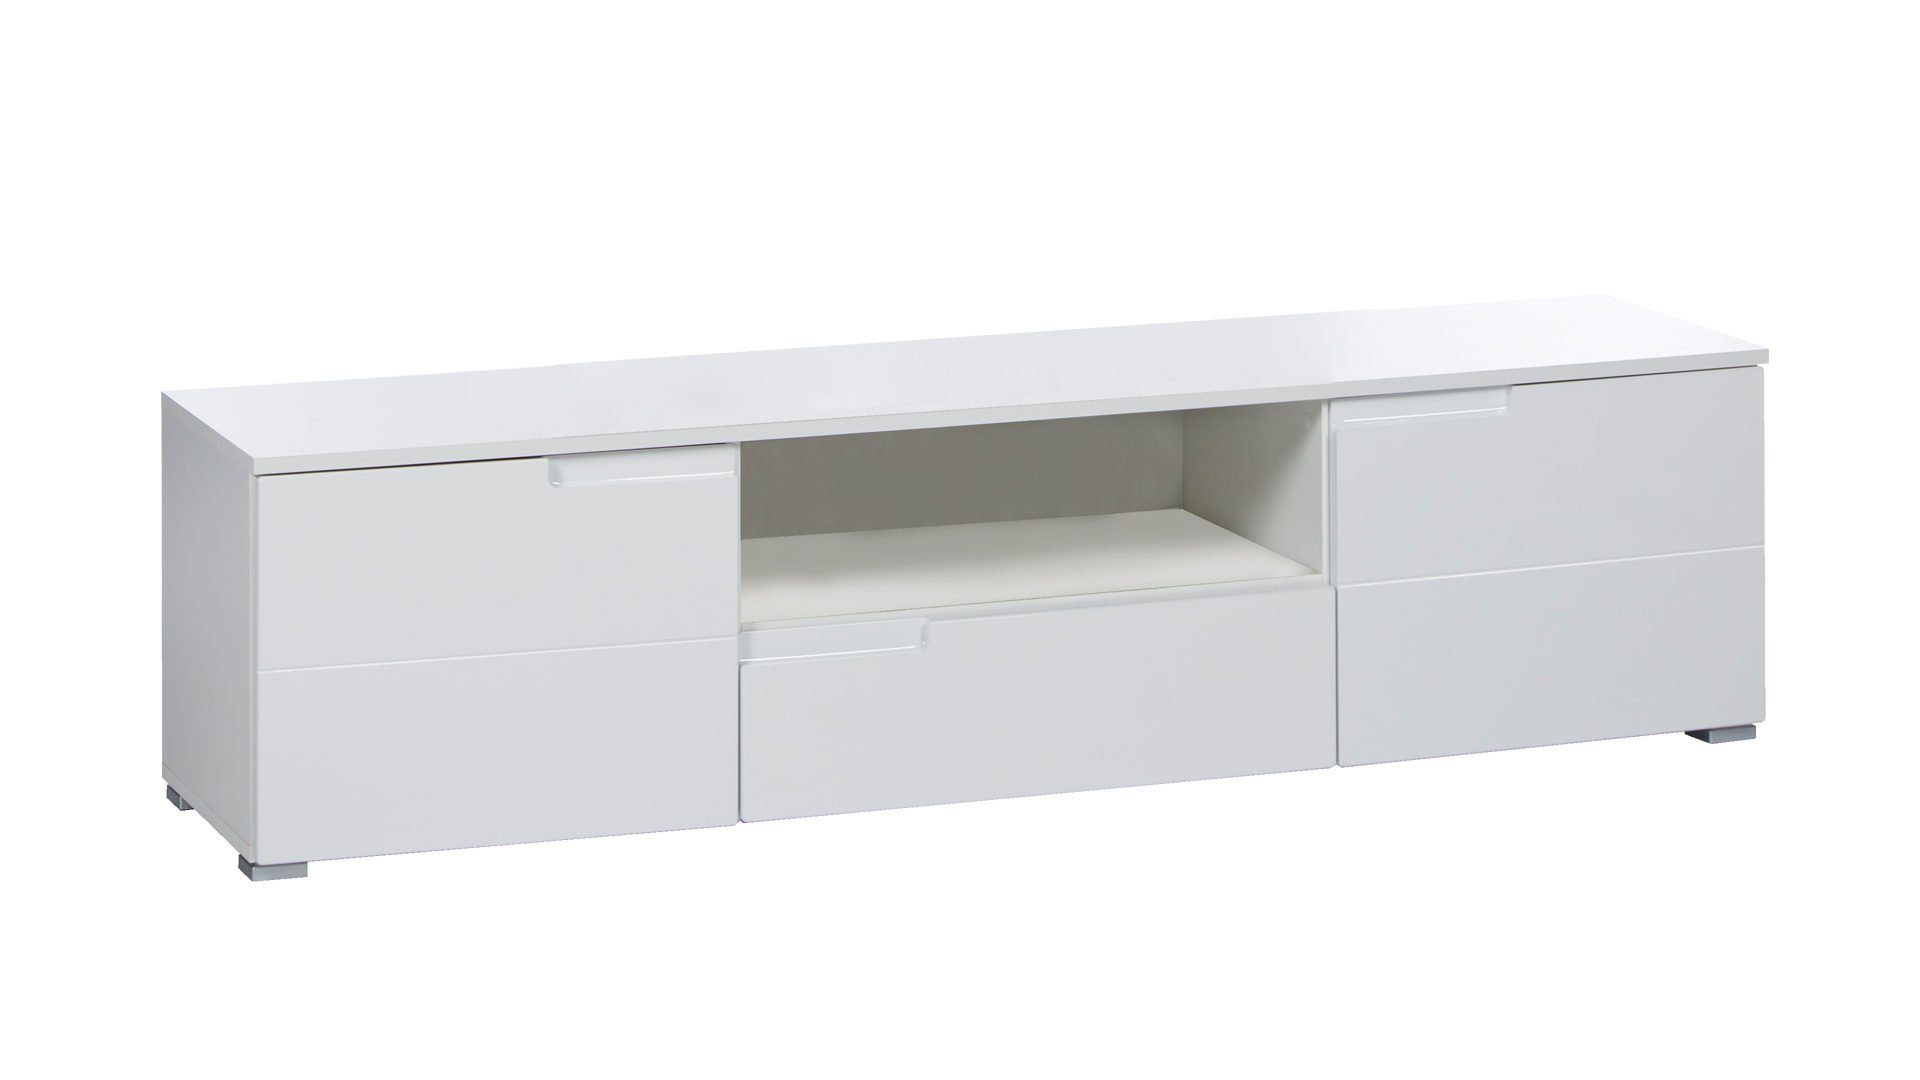 Lowboard Bega consult aus MDF in Weiß Lowboard für Ihre Medienmöbel und TV Möbel weiße Hochglanzfront & weißer Korpus – eine Schublade, zwei Türen